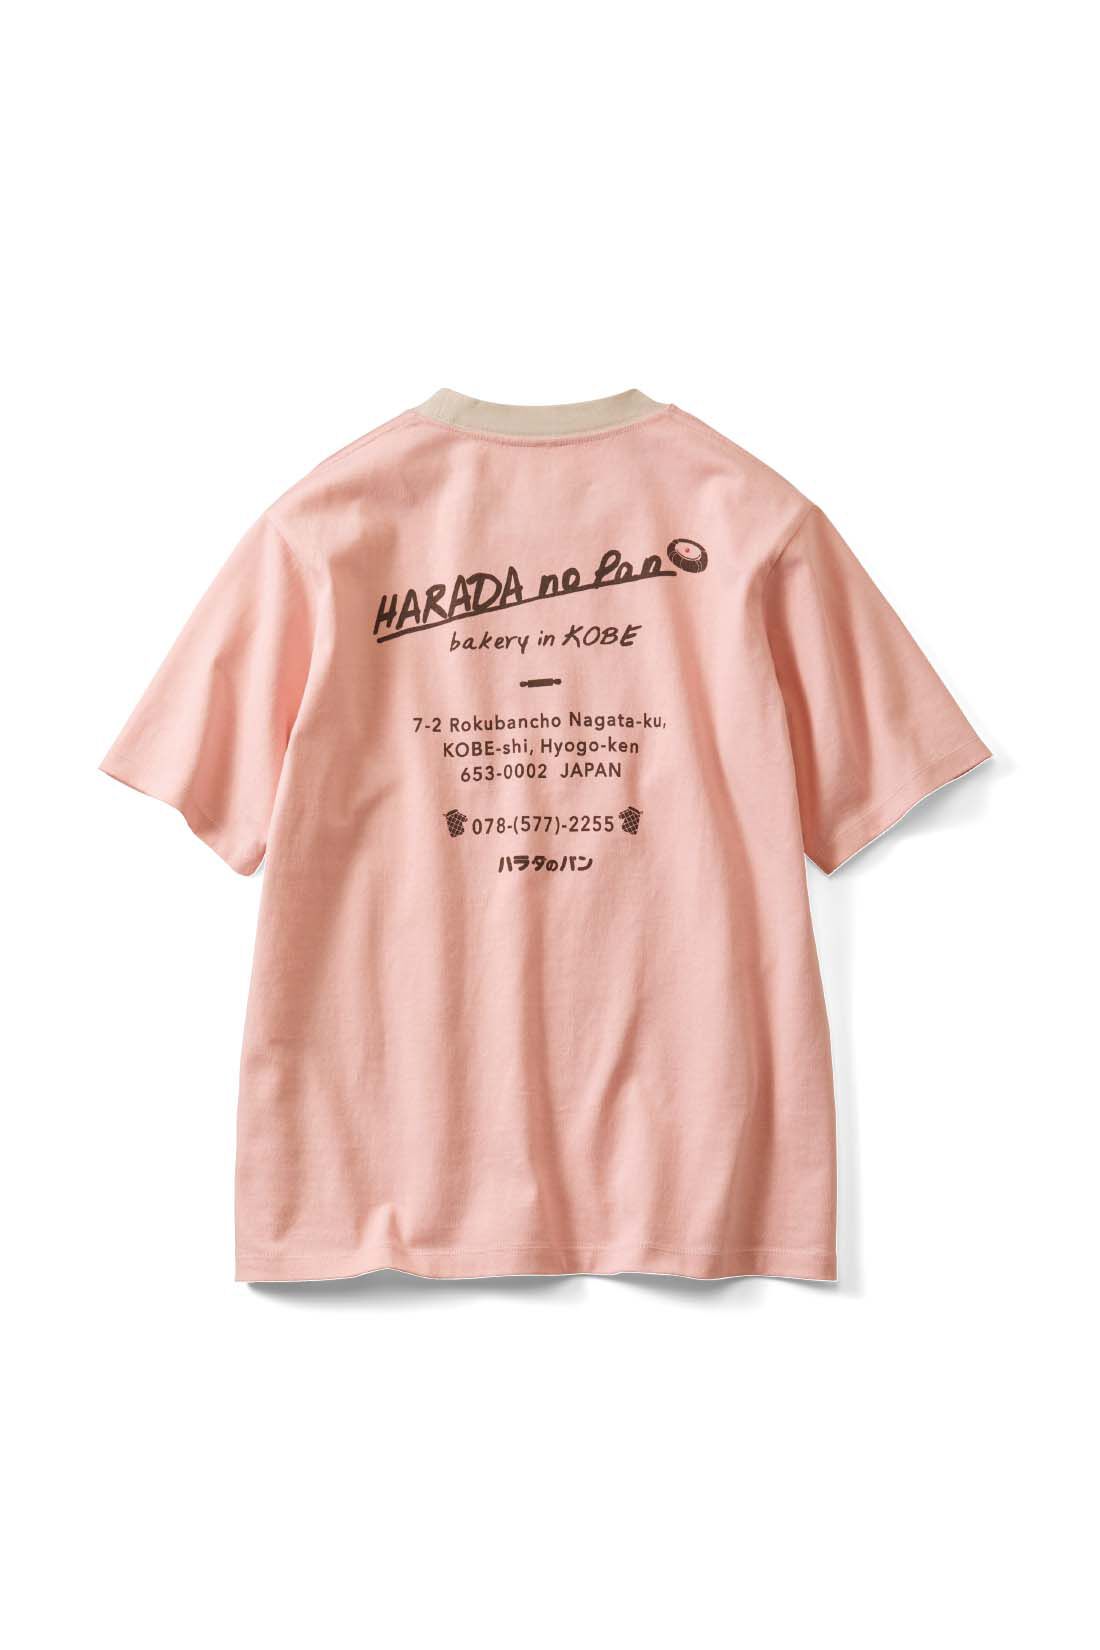 Real Stock|Live love cottonプロジェクト リブ イン コンフォート神戸のベーカリーハラダのパンさんとつくったオーガニックコットンのレトロかわいいTシャツ〈ベビーピンク〉|back